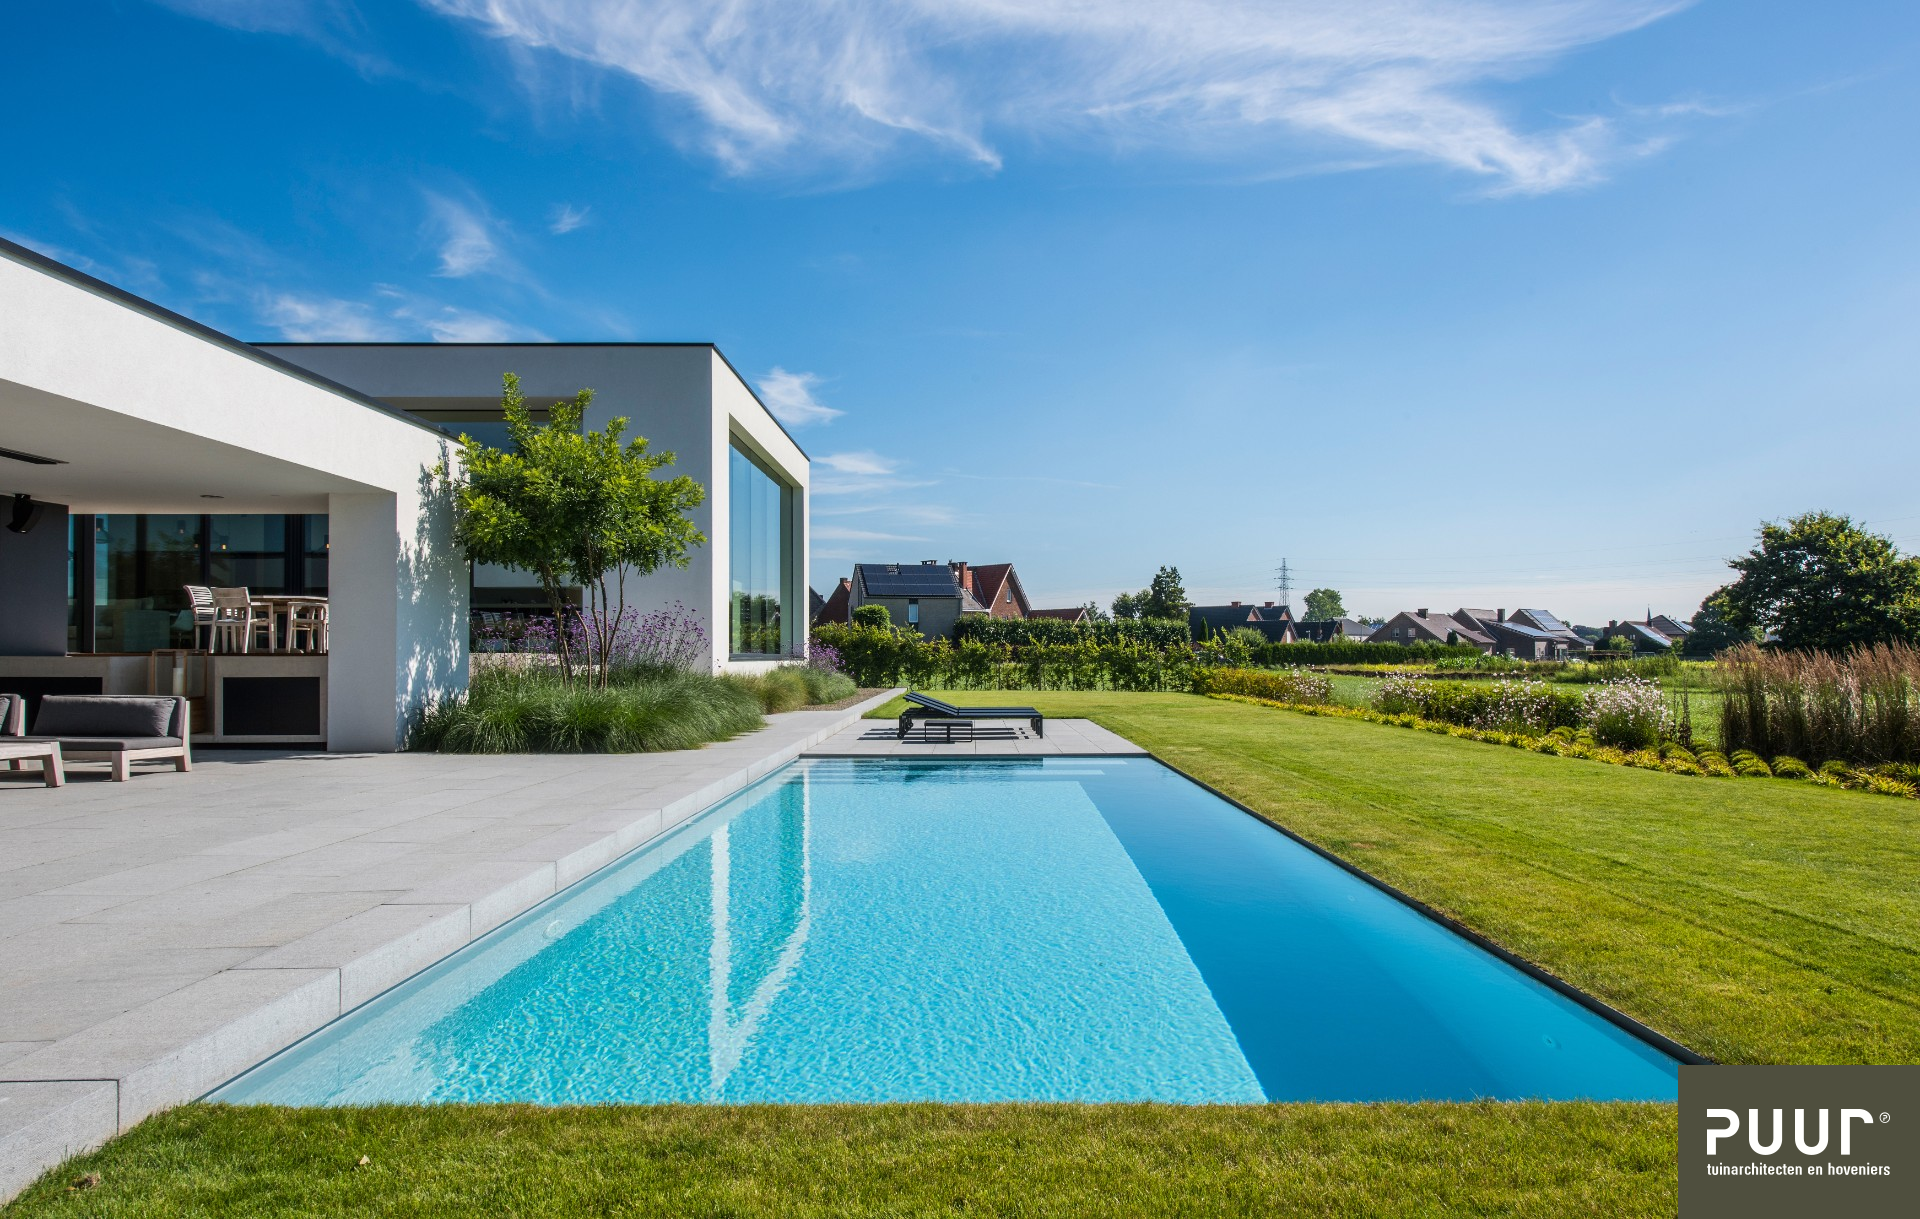 Zwembad bij moderne villa in Liempde - Puur Groen